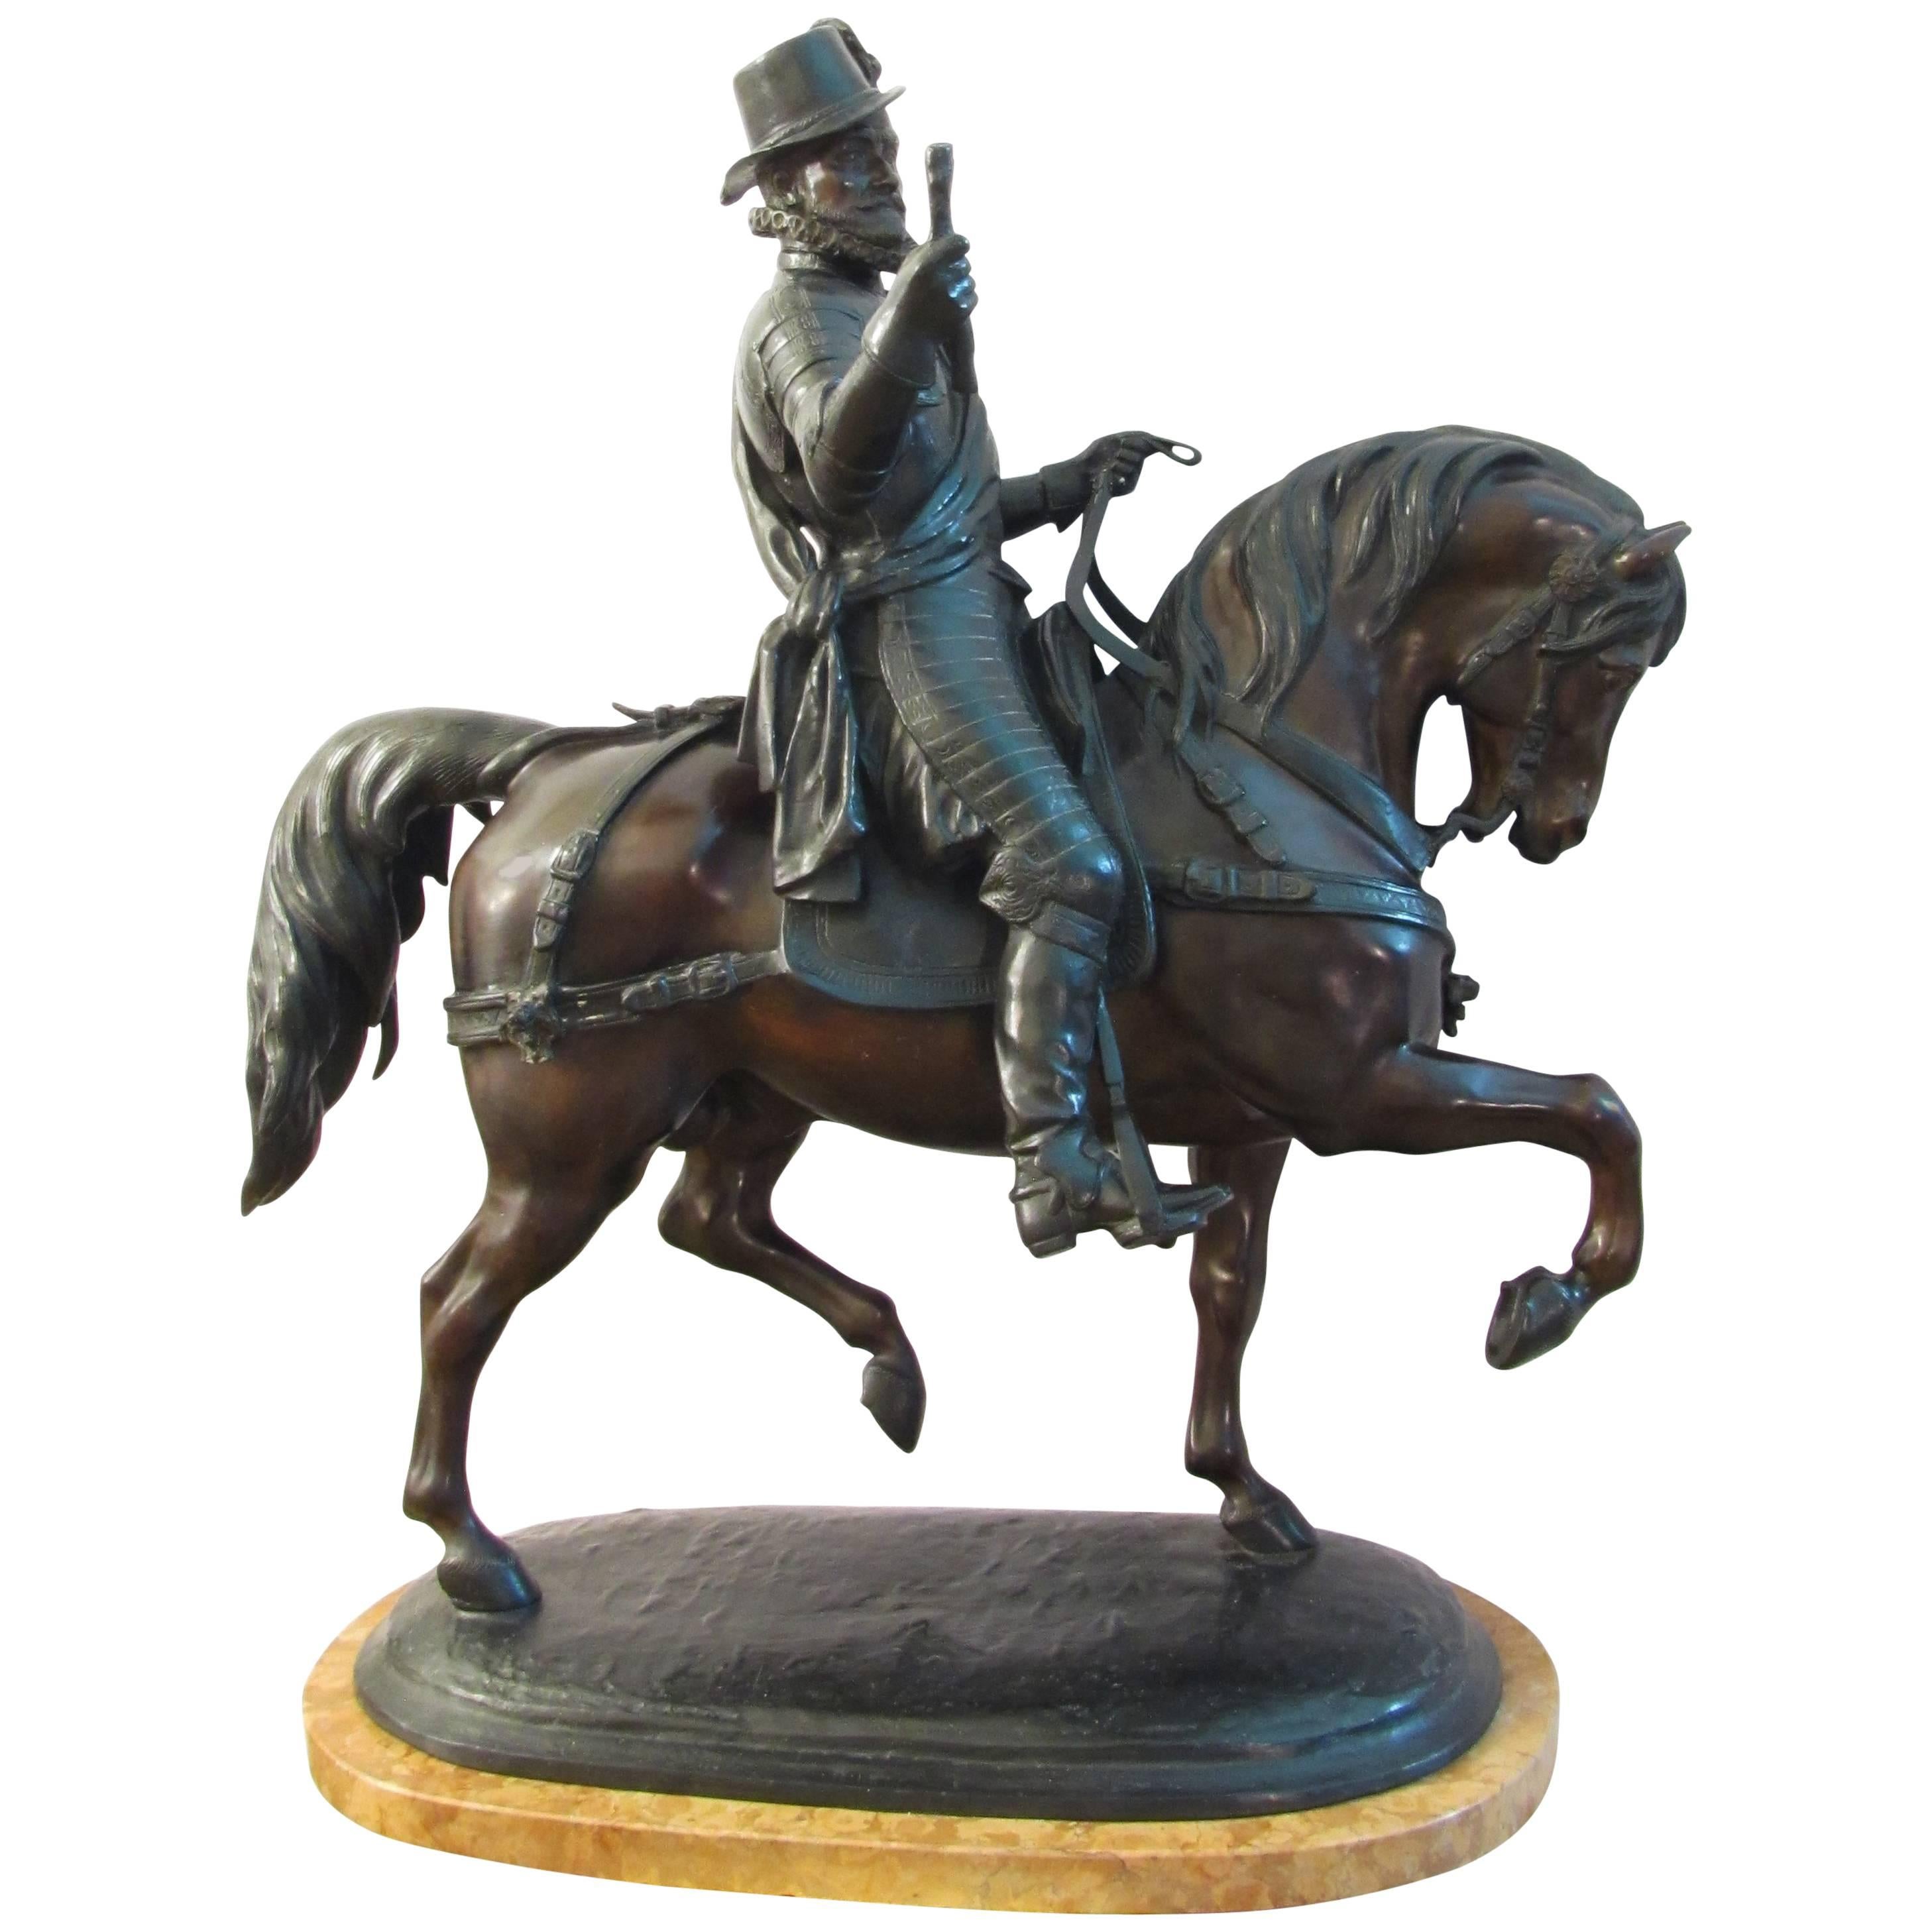 British 19th Century Equestrian Statue Depicting Philip II of Spain in Bronze